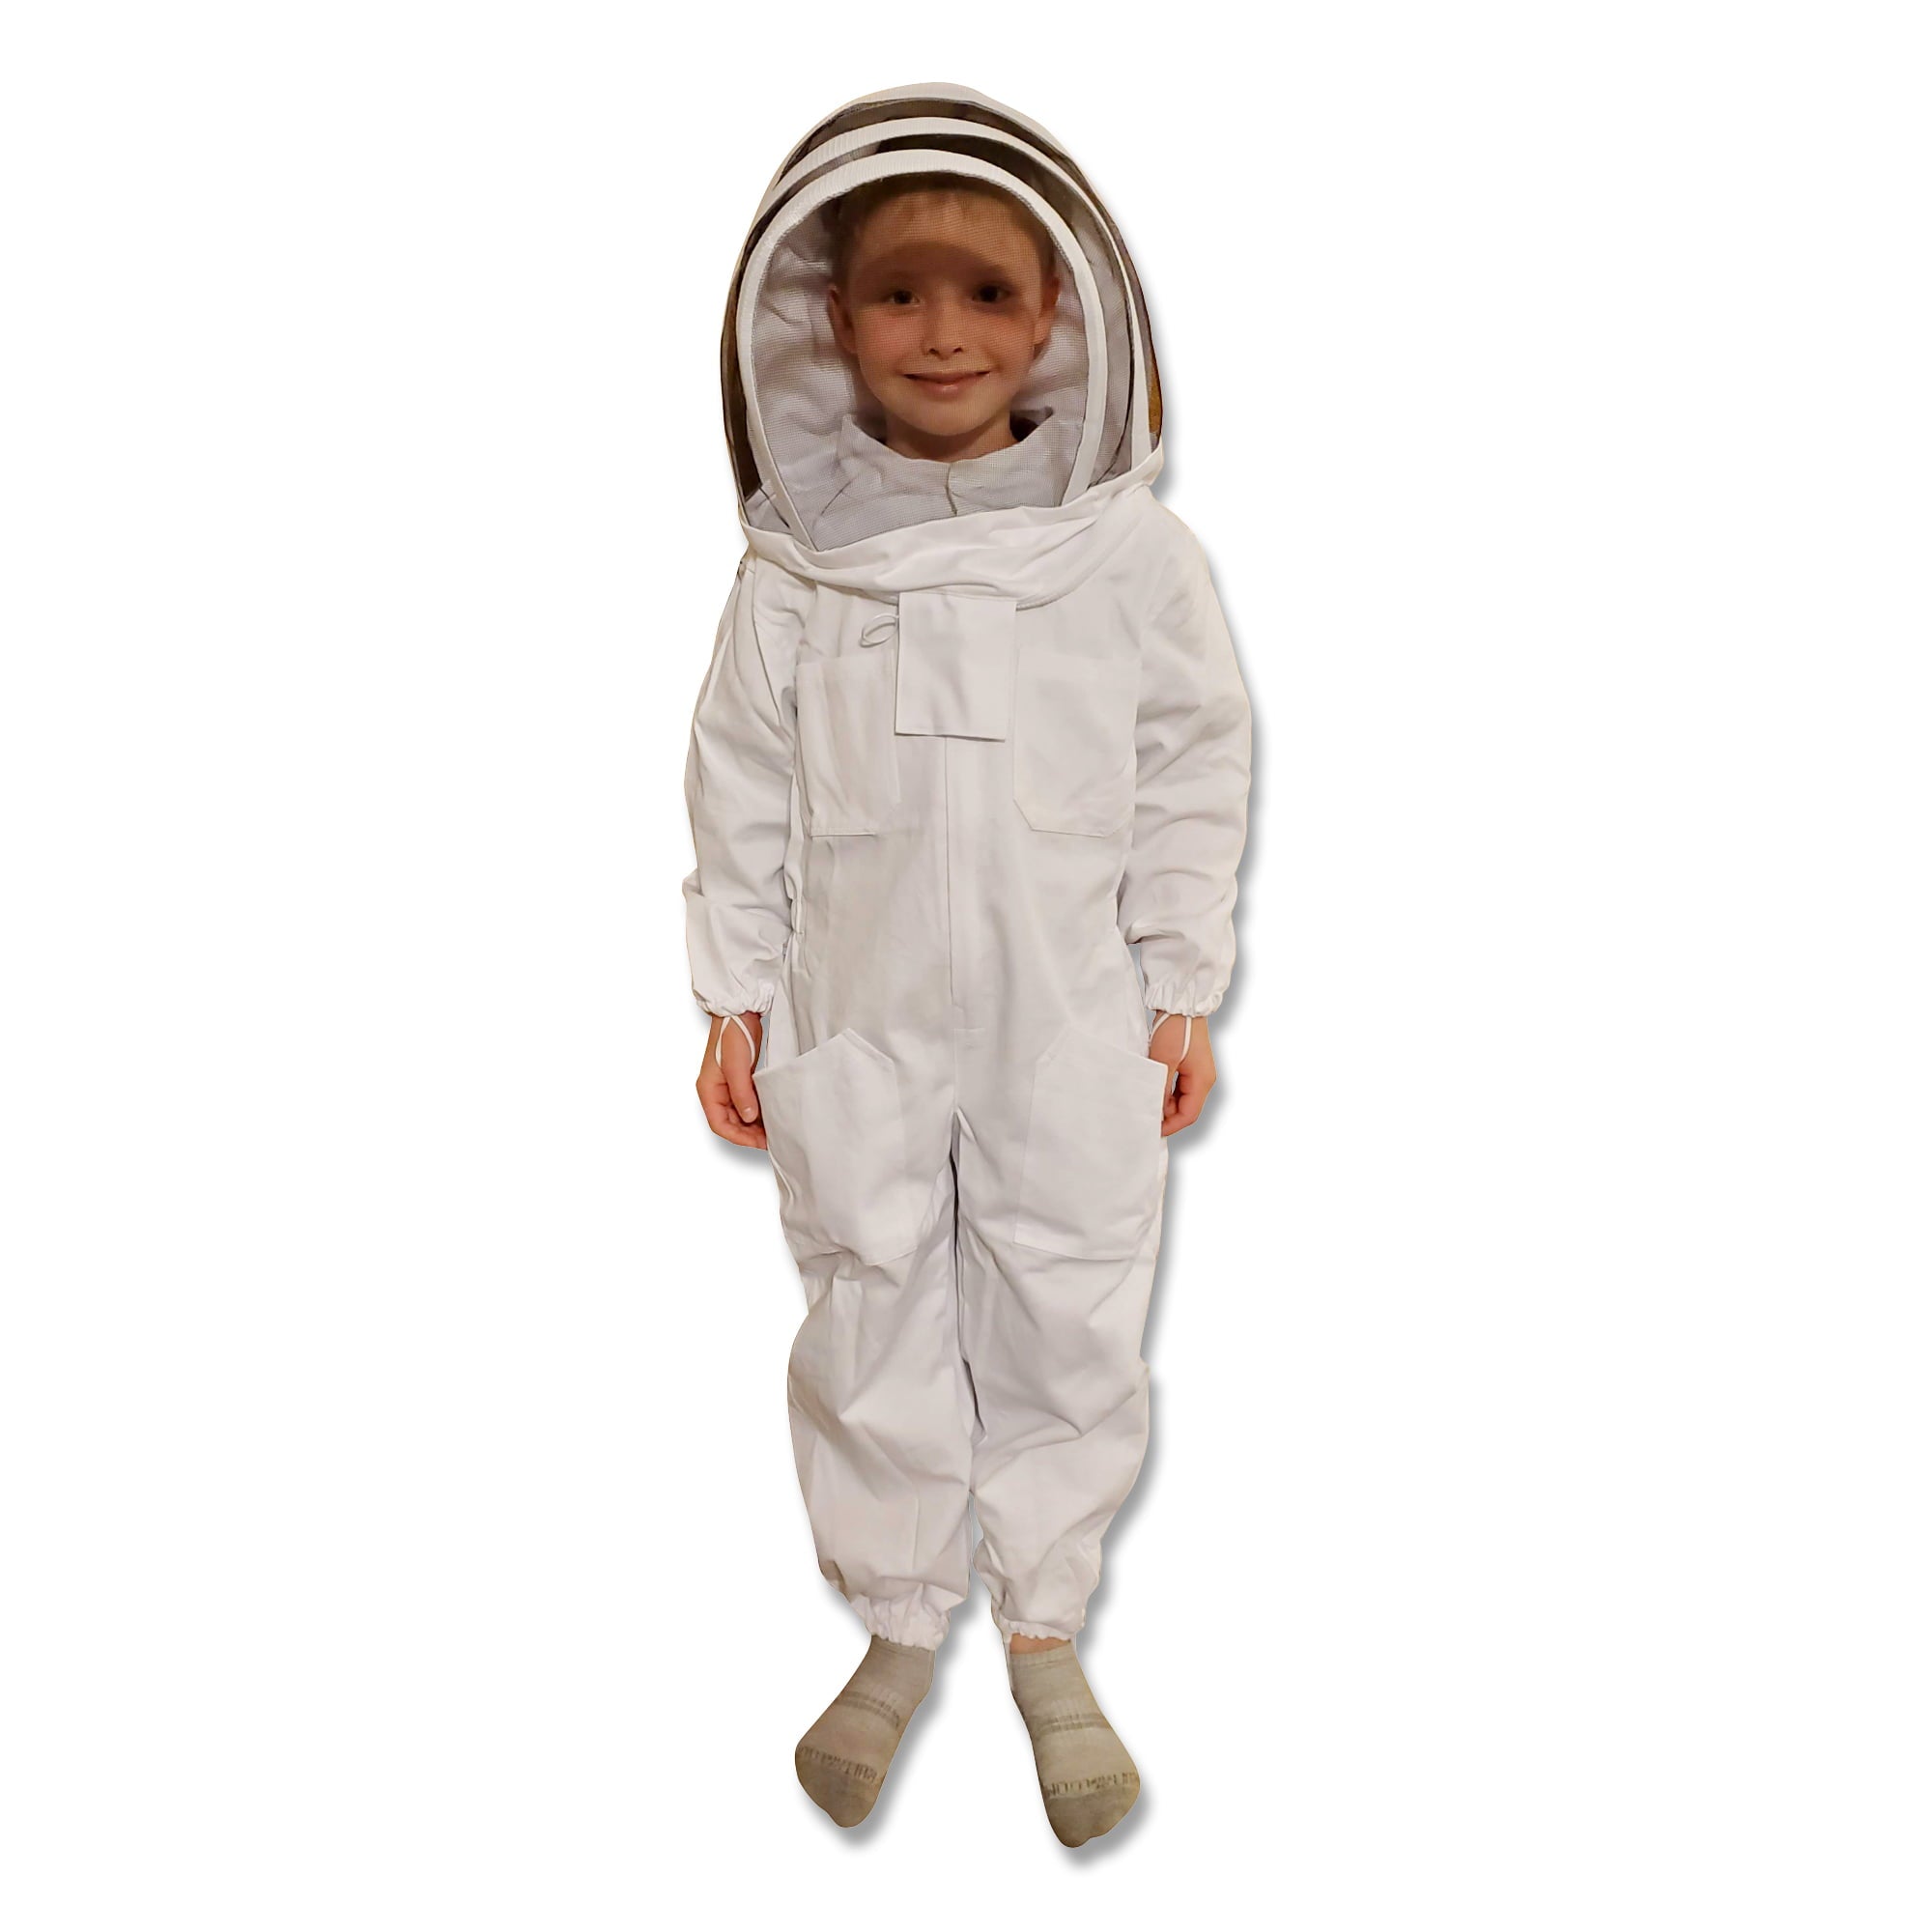 Kids Bee Suit - Cotton For beekeeping